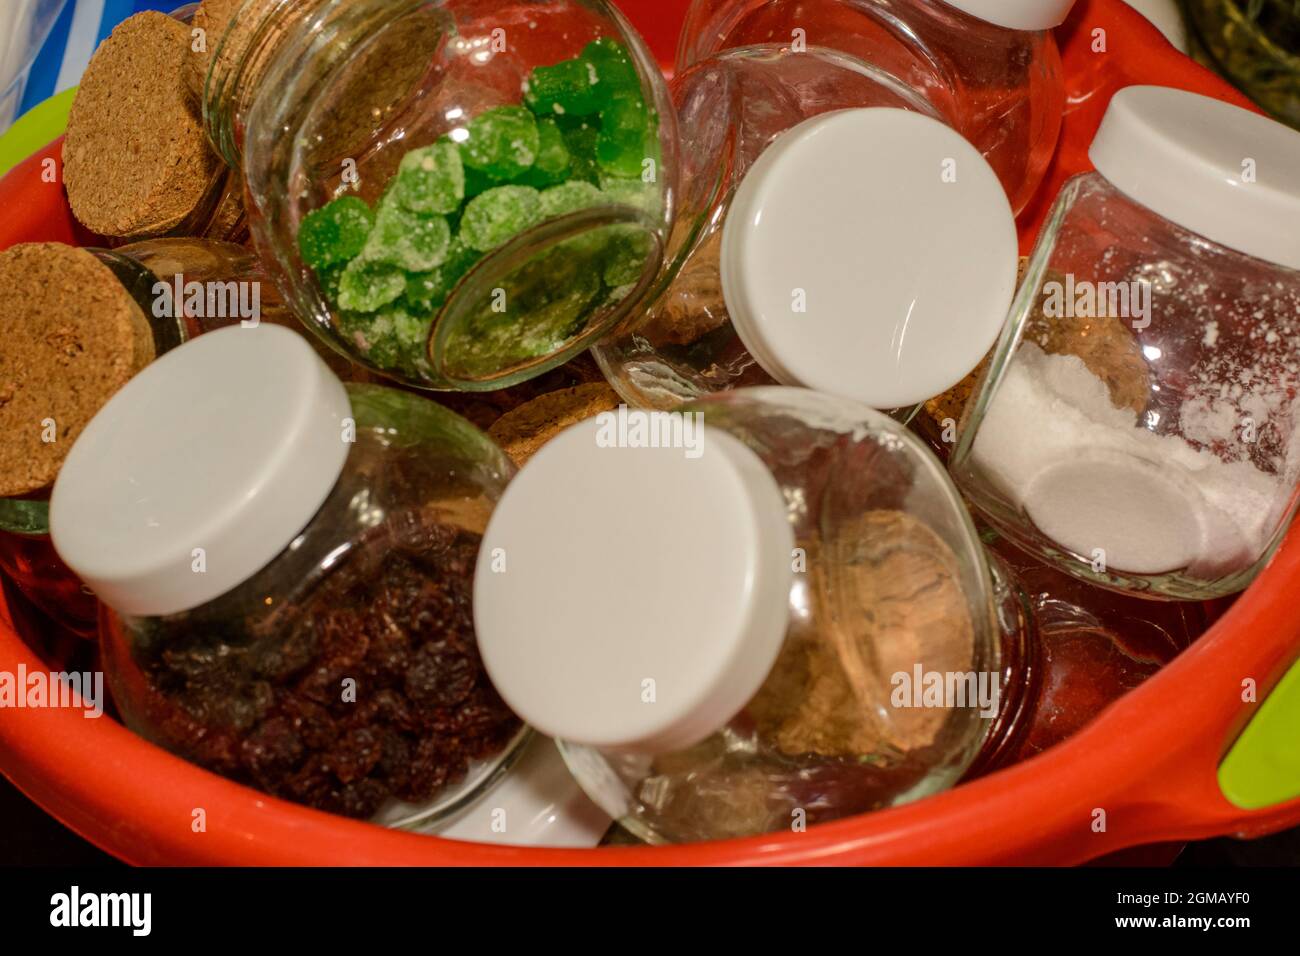 Bonbons, nourriture et épices dans de petits pots en verre dans un bol en plastique rouge. Intérieur d'une cuisine résidentielle. Banque D'Images